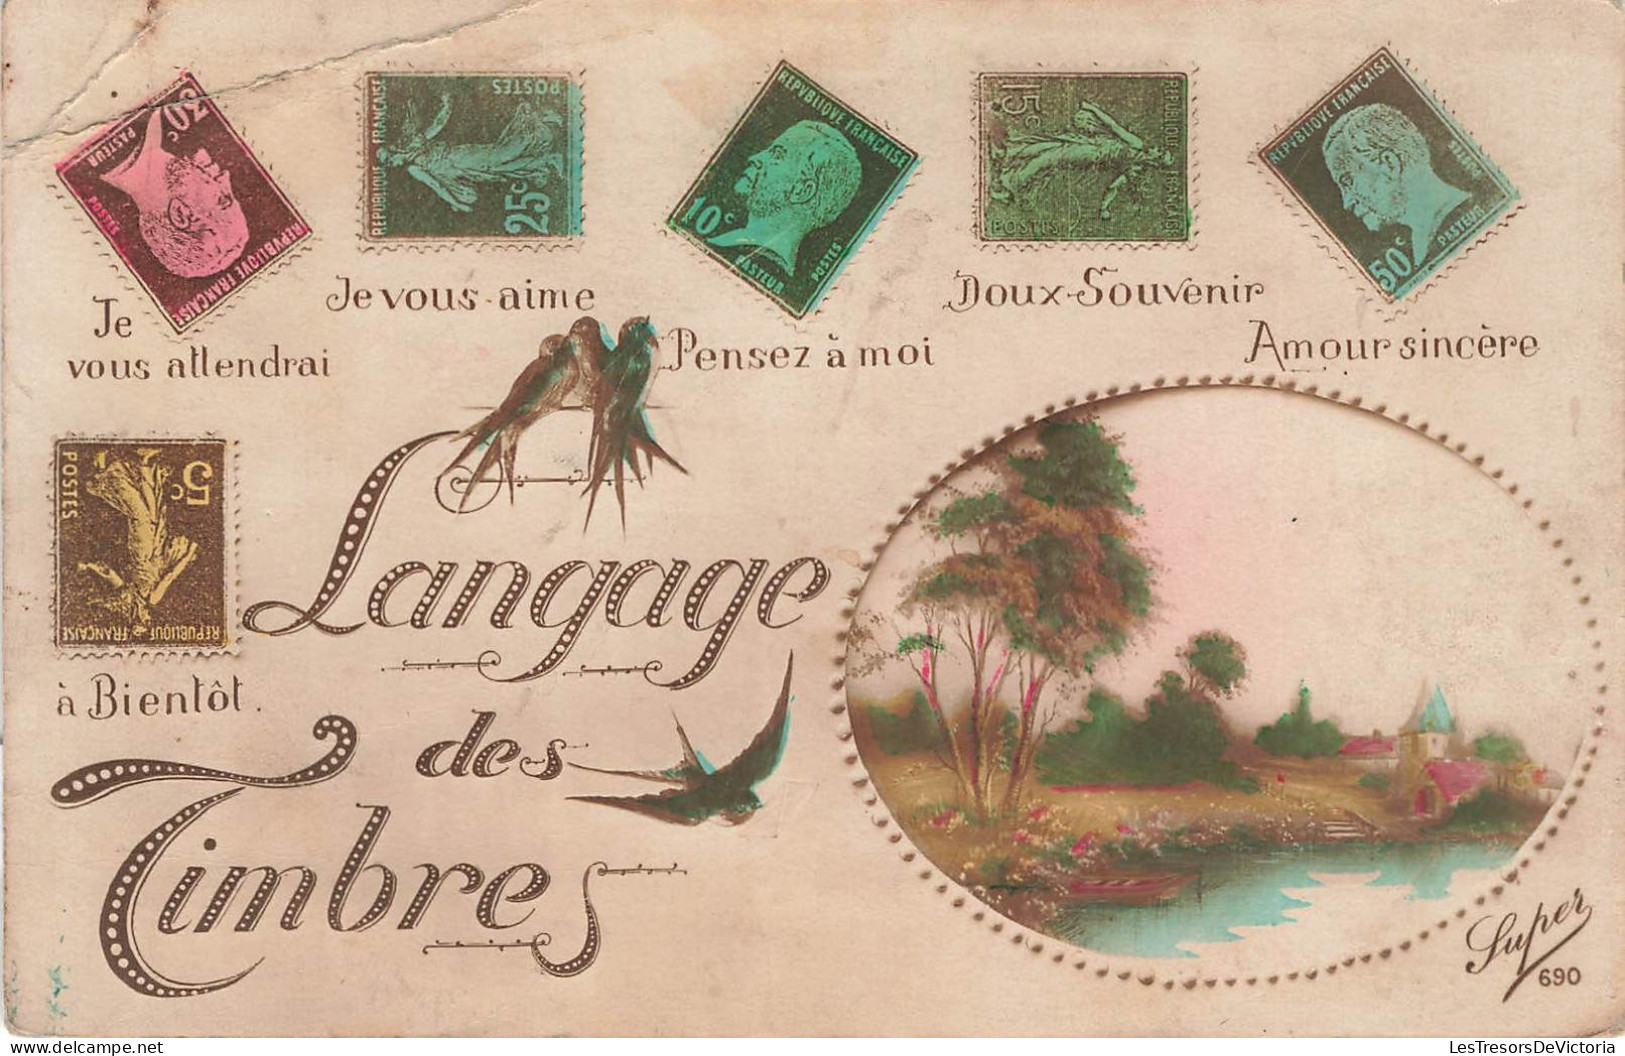 TIMBRES - Langage Des Timbres - Colorisé - Carte Postale Ancienne - Timbres (représentations)